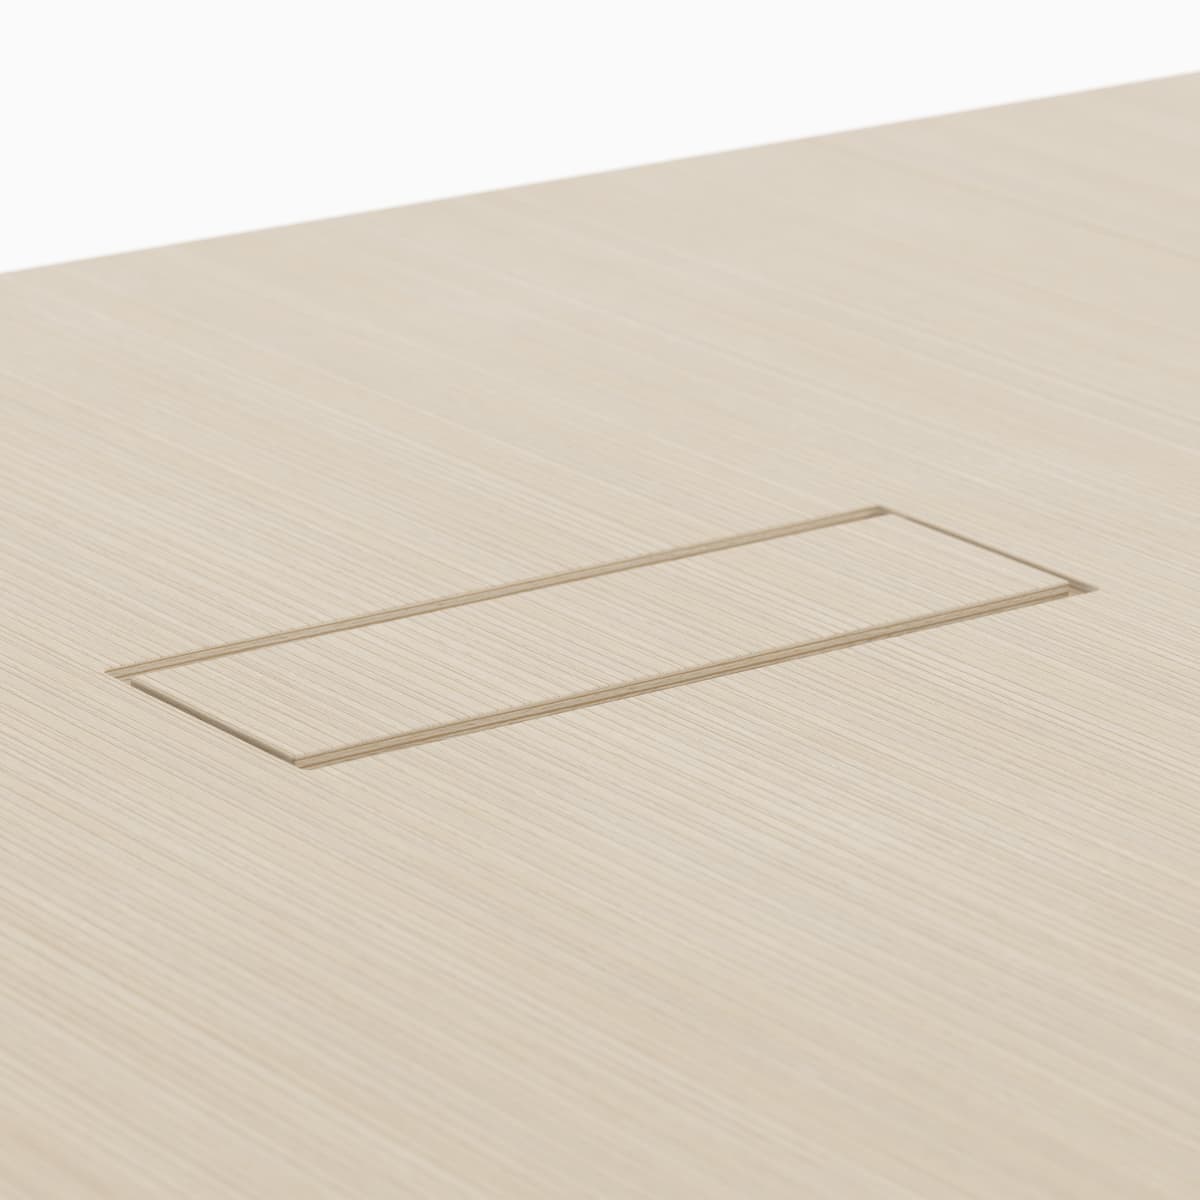 Una vista di dettaglio dell'apertura impallacciata, disponibile con venatura abbinata, che consente il passaggio agevole dei cavi dati e di alimentazione dal pavimento alla superficie del tavolo.